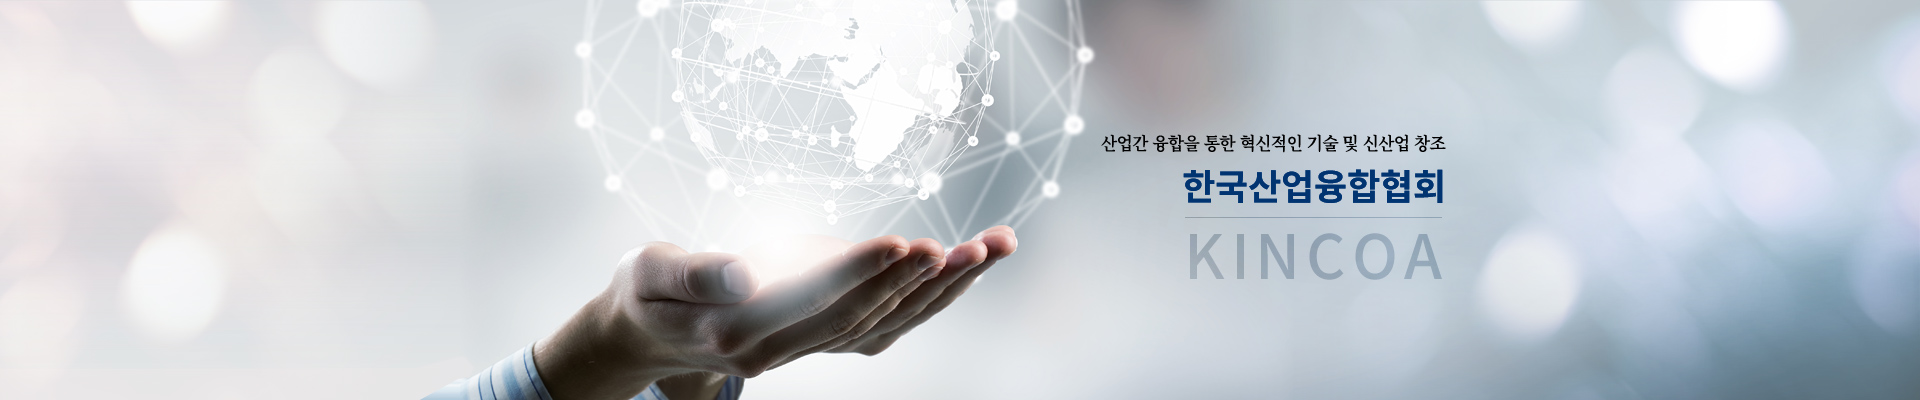 산업간 융합을 통한 혁신적인 기술 및 신산업 창조, 한국산업융합협회 / KINCOA